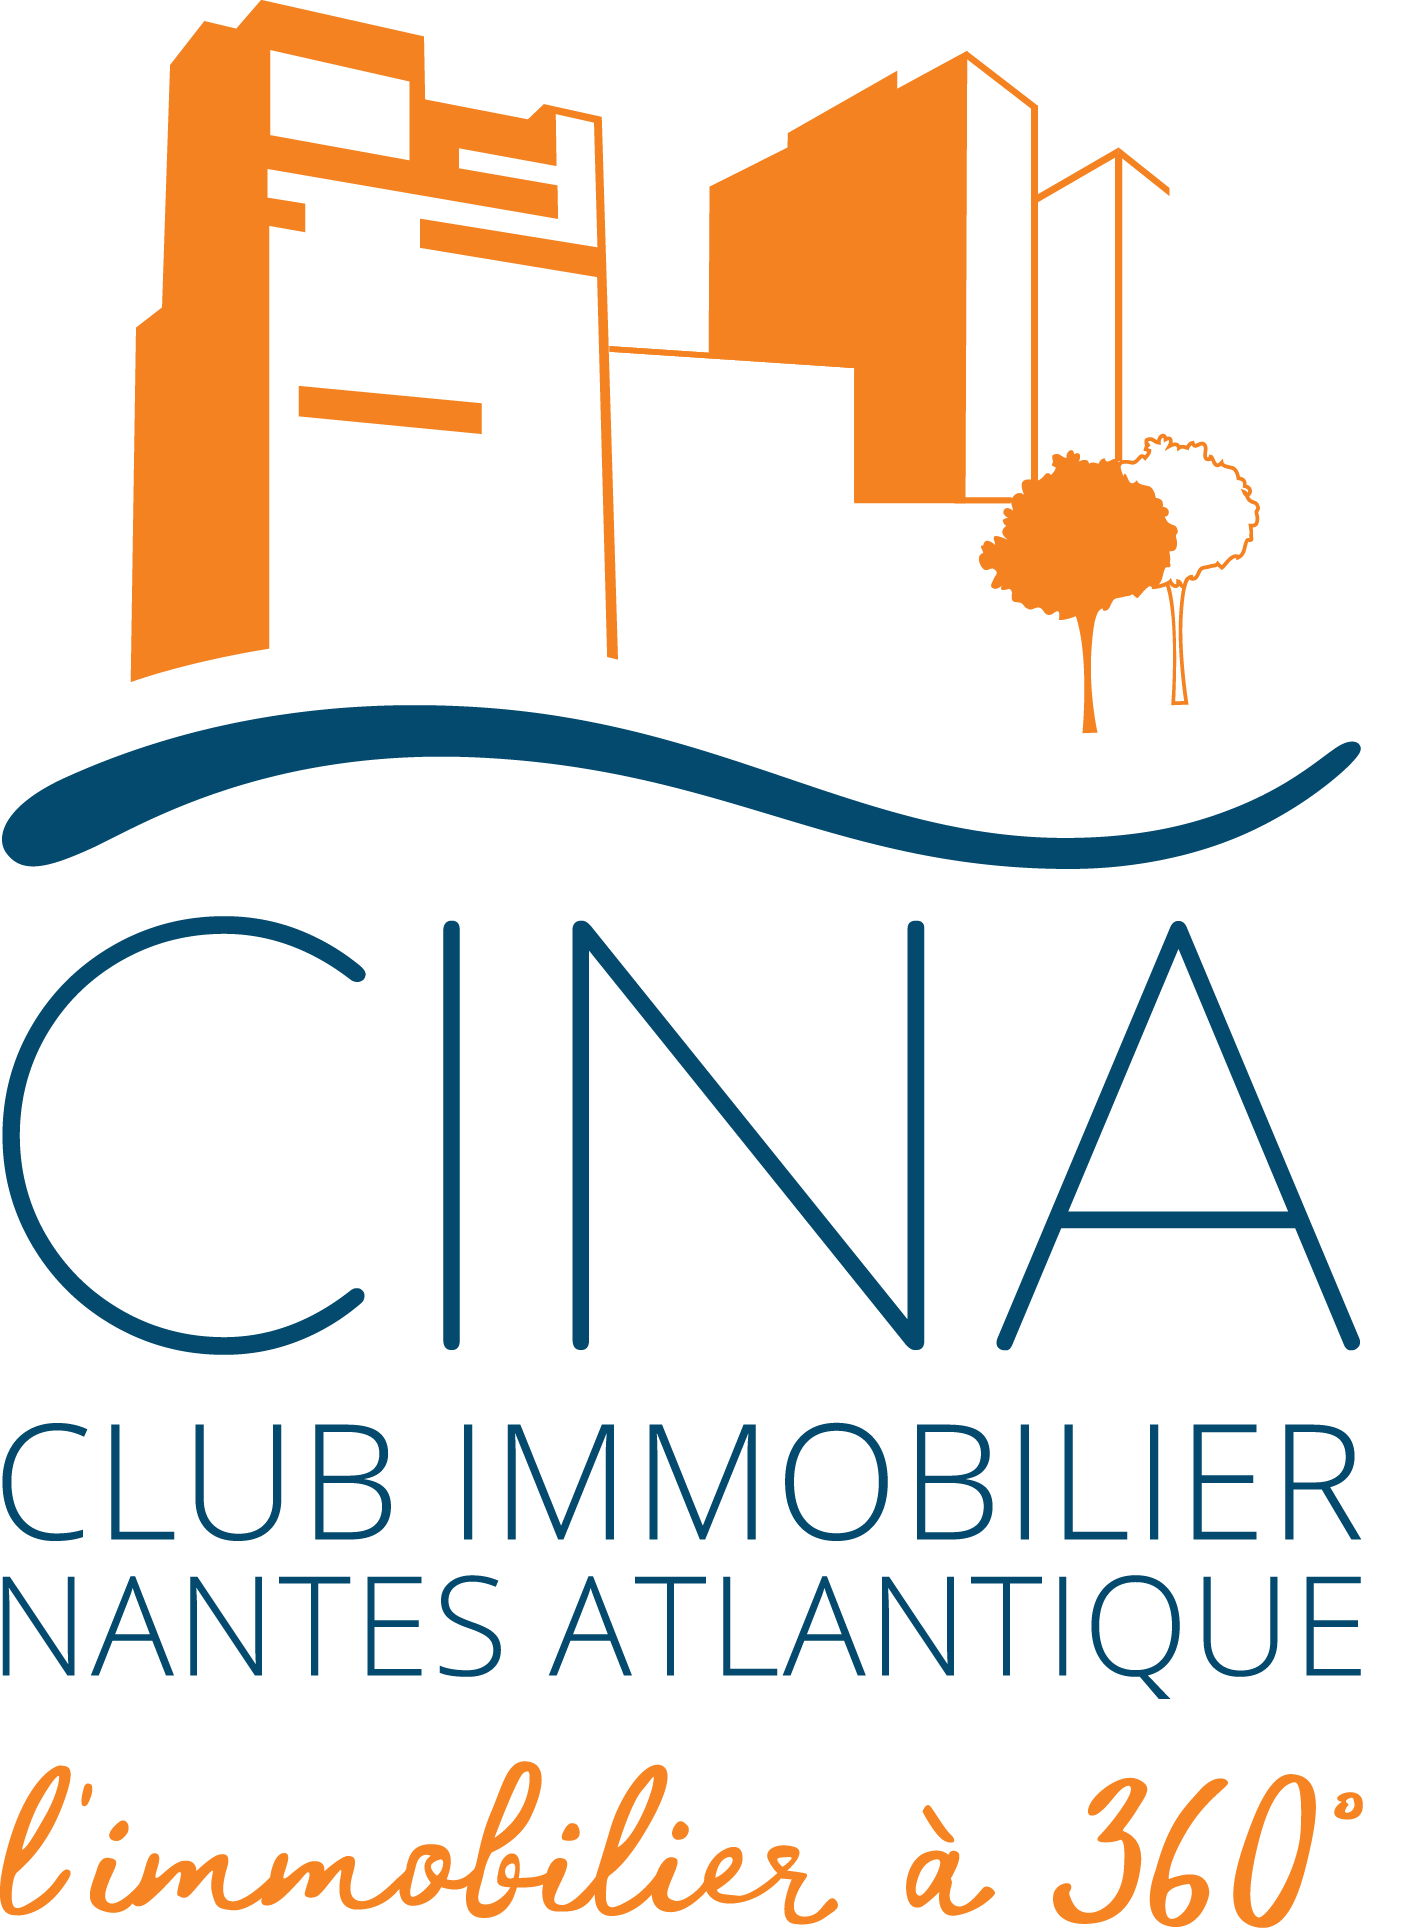 Club Immobilier Nantes Atlantique